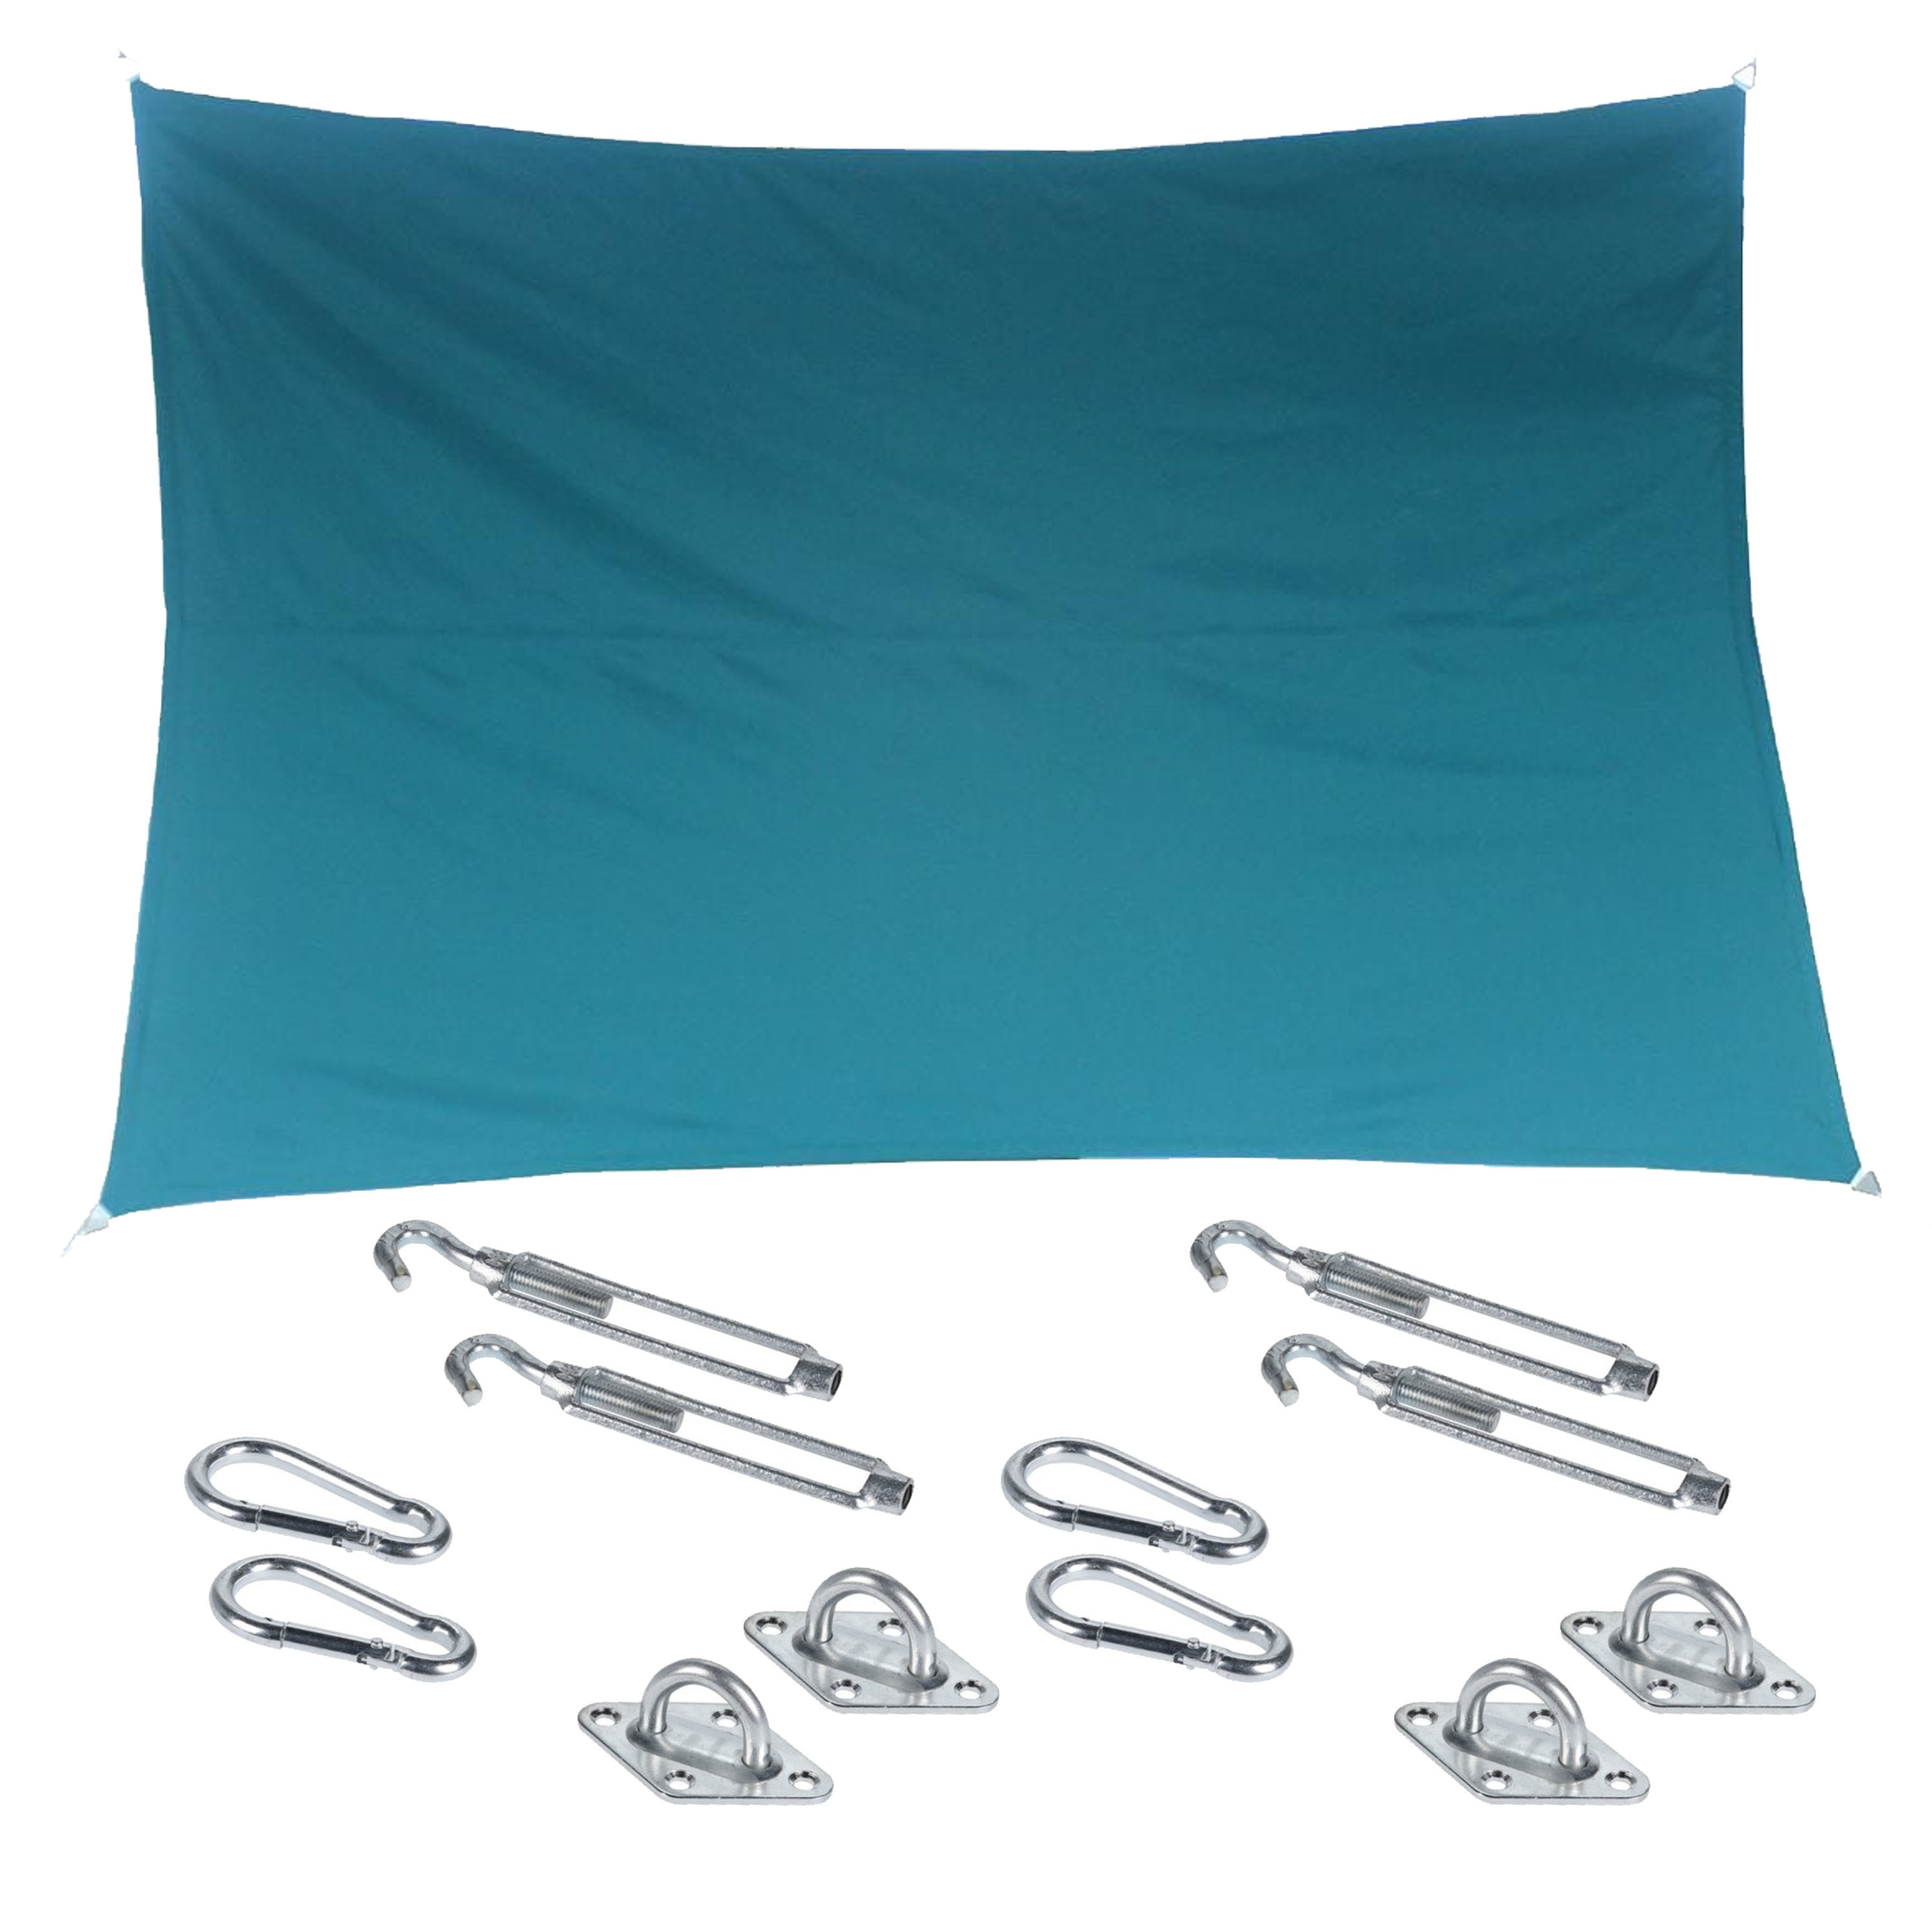 Premium kwaliteit schaduwdoek/zonnescherm Shae rechthoekig blauw 2 x 3 meter - inclusief bevestiging haken set